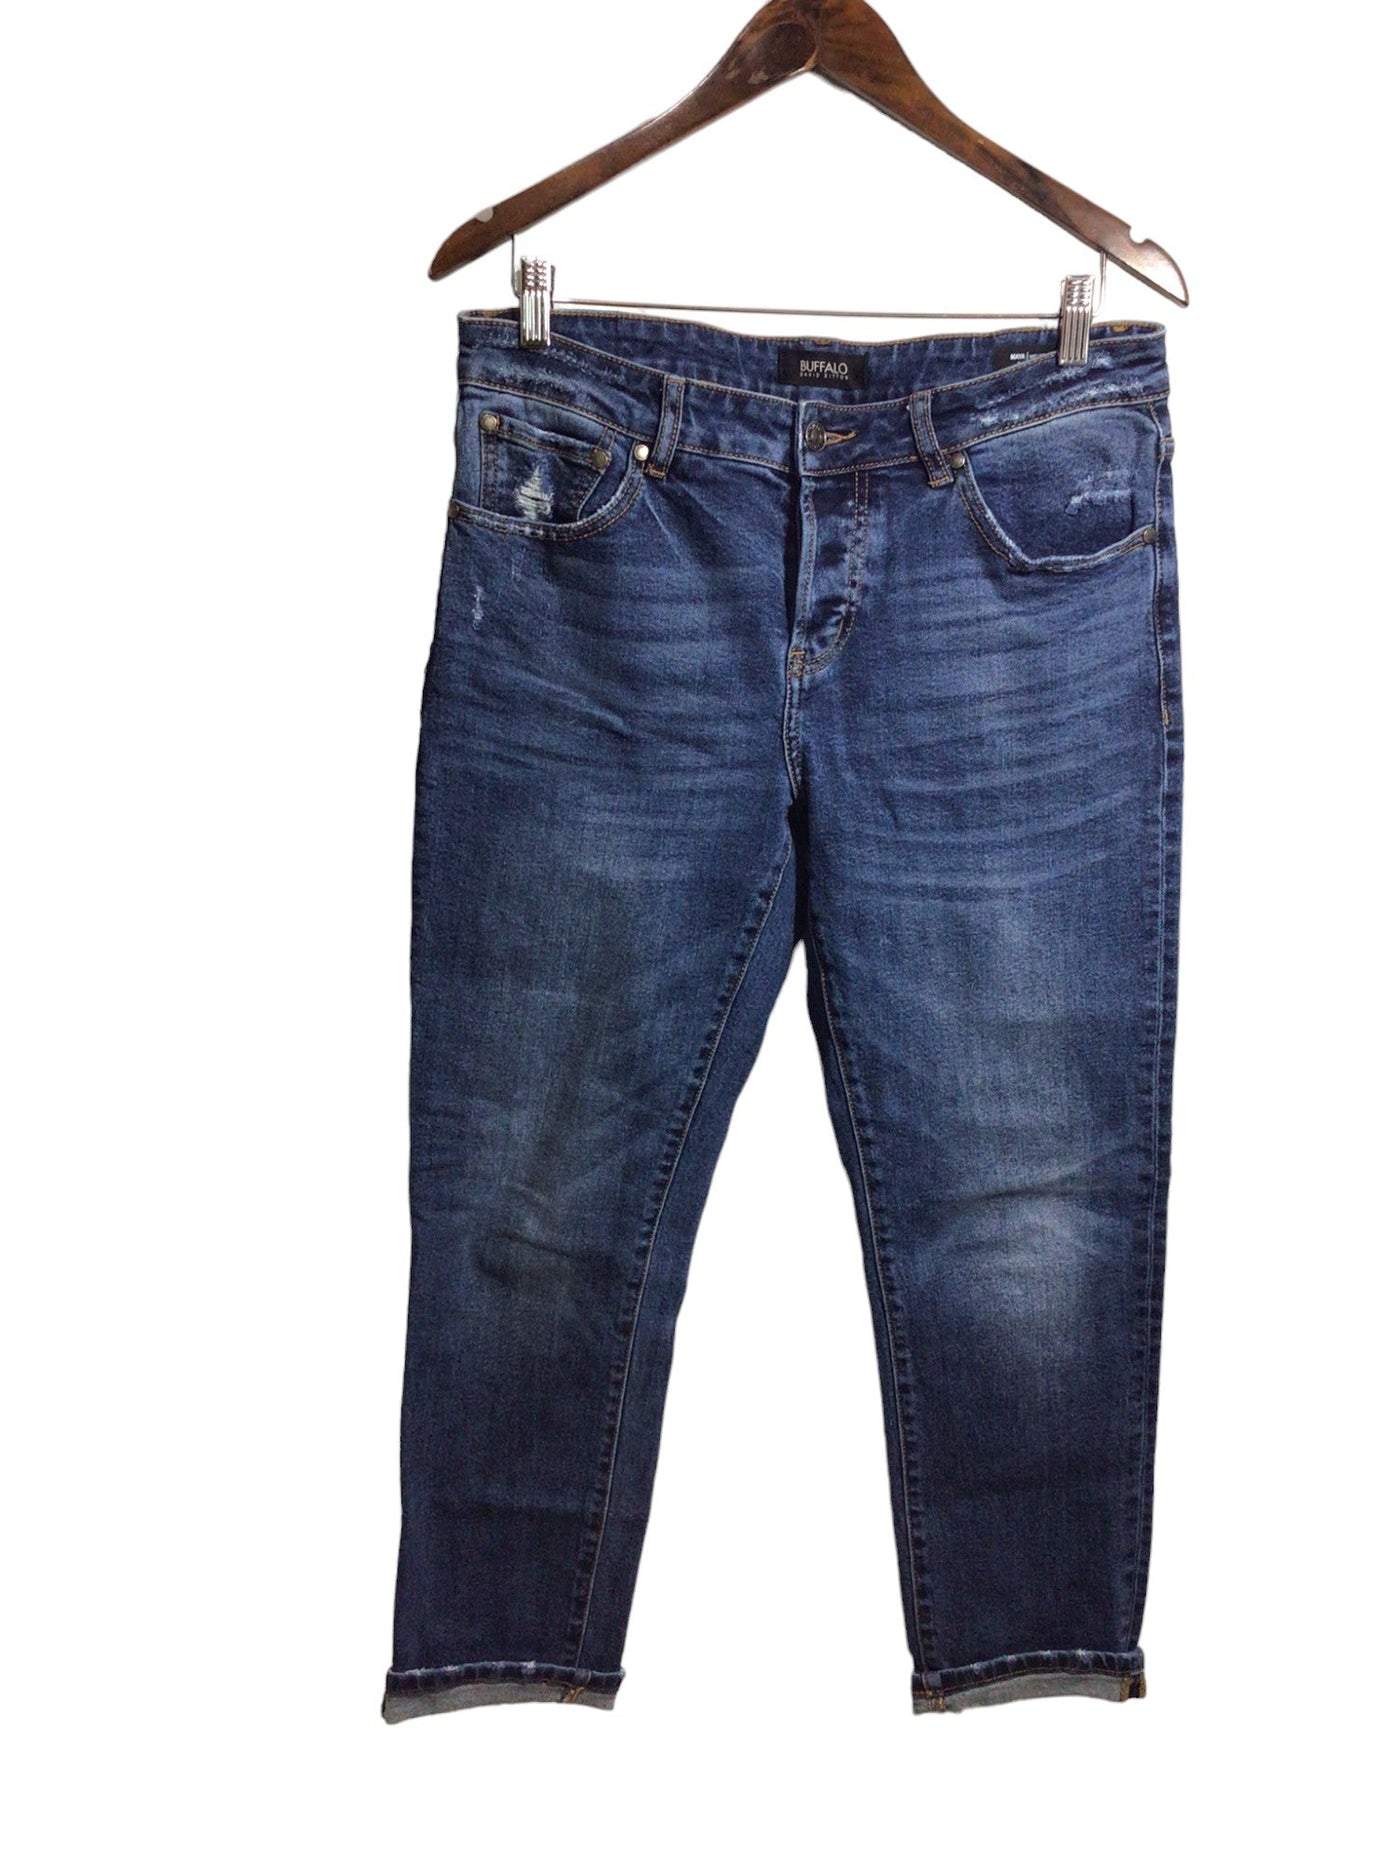 BUFFALO BY DAVID BITTON Women Straight-Legged Jeans Regular fit in Blue - Size 29 | 34.99 $ KOOP